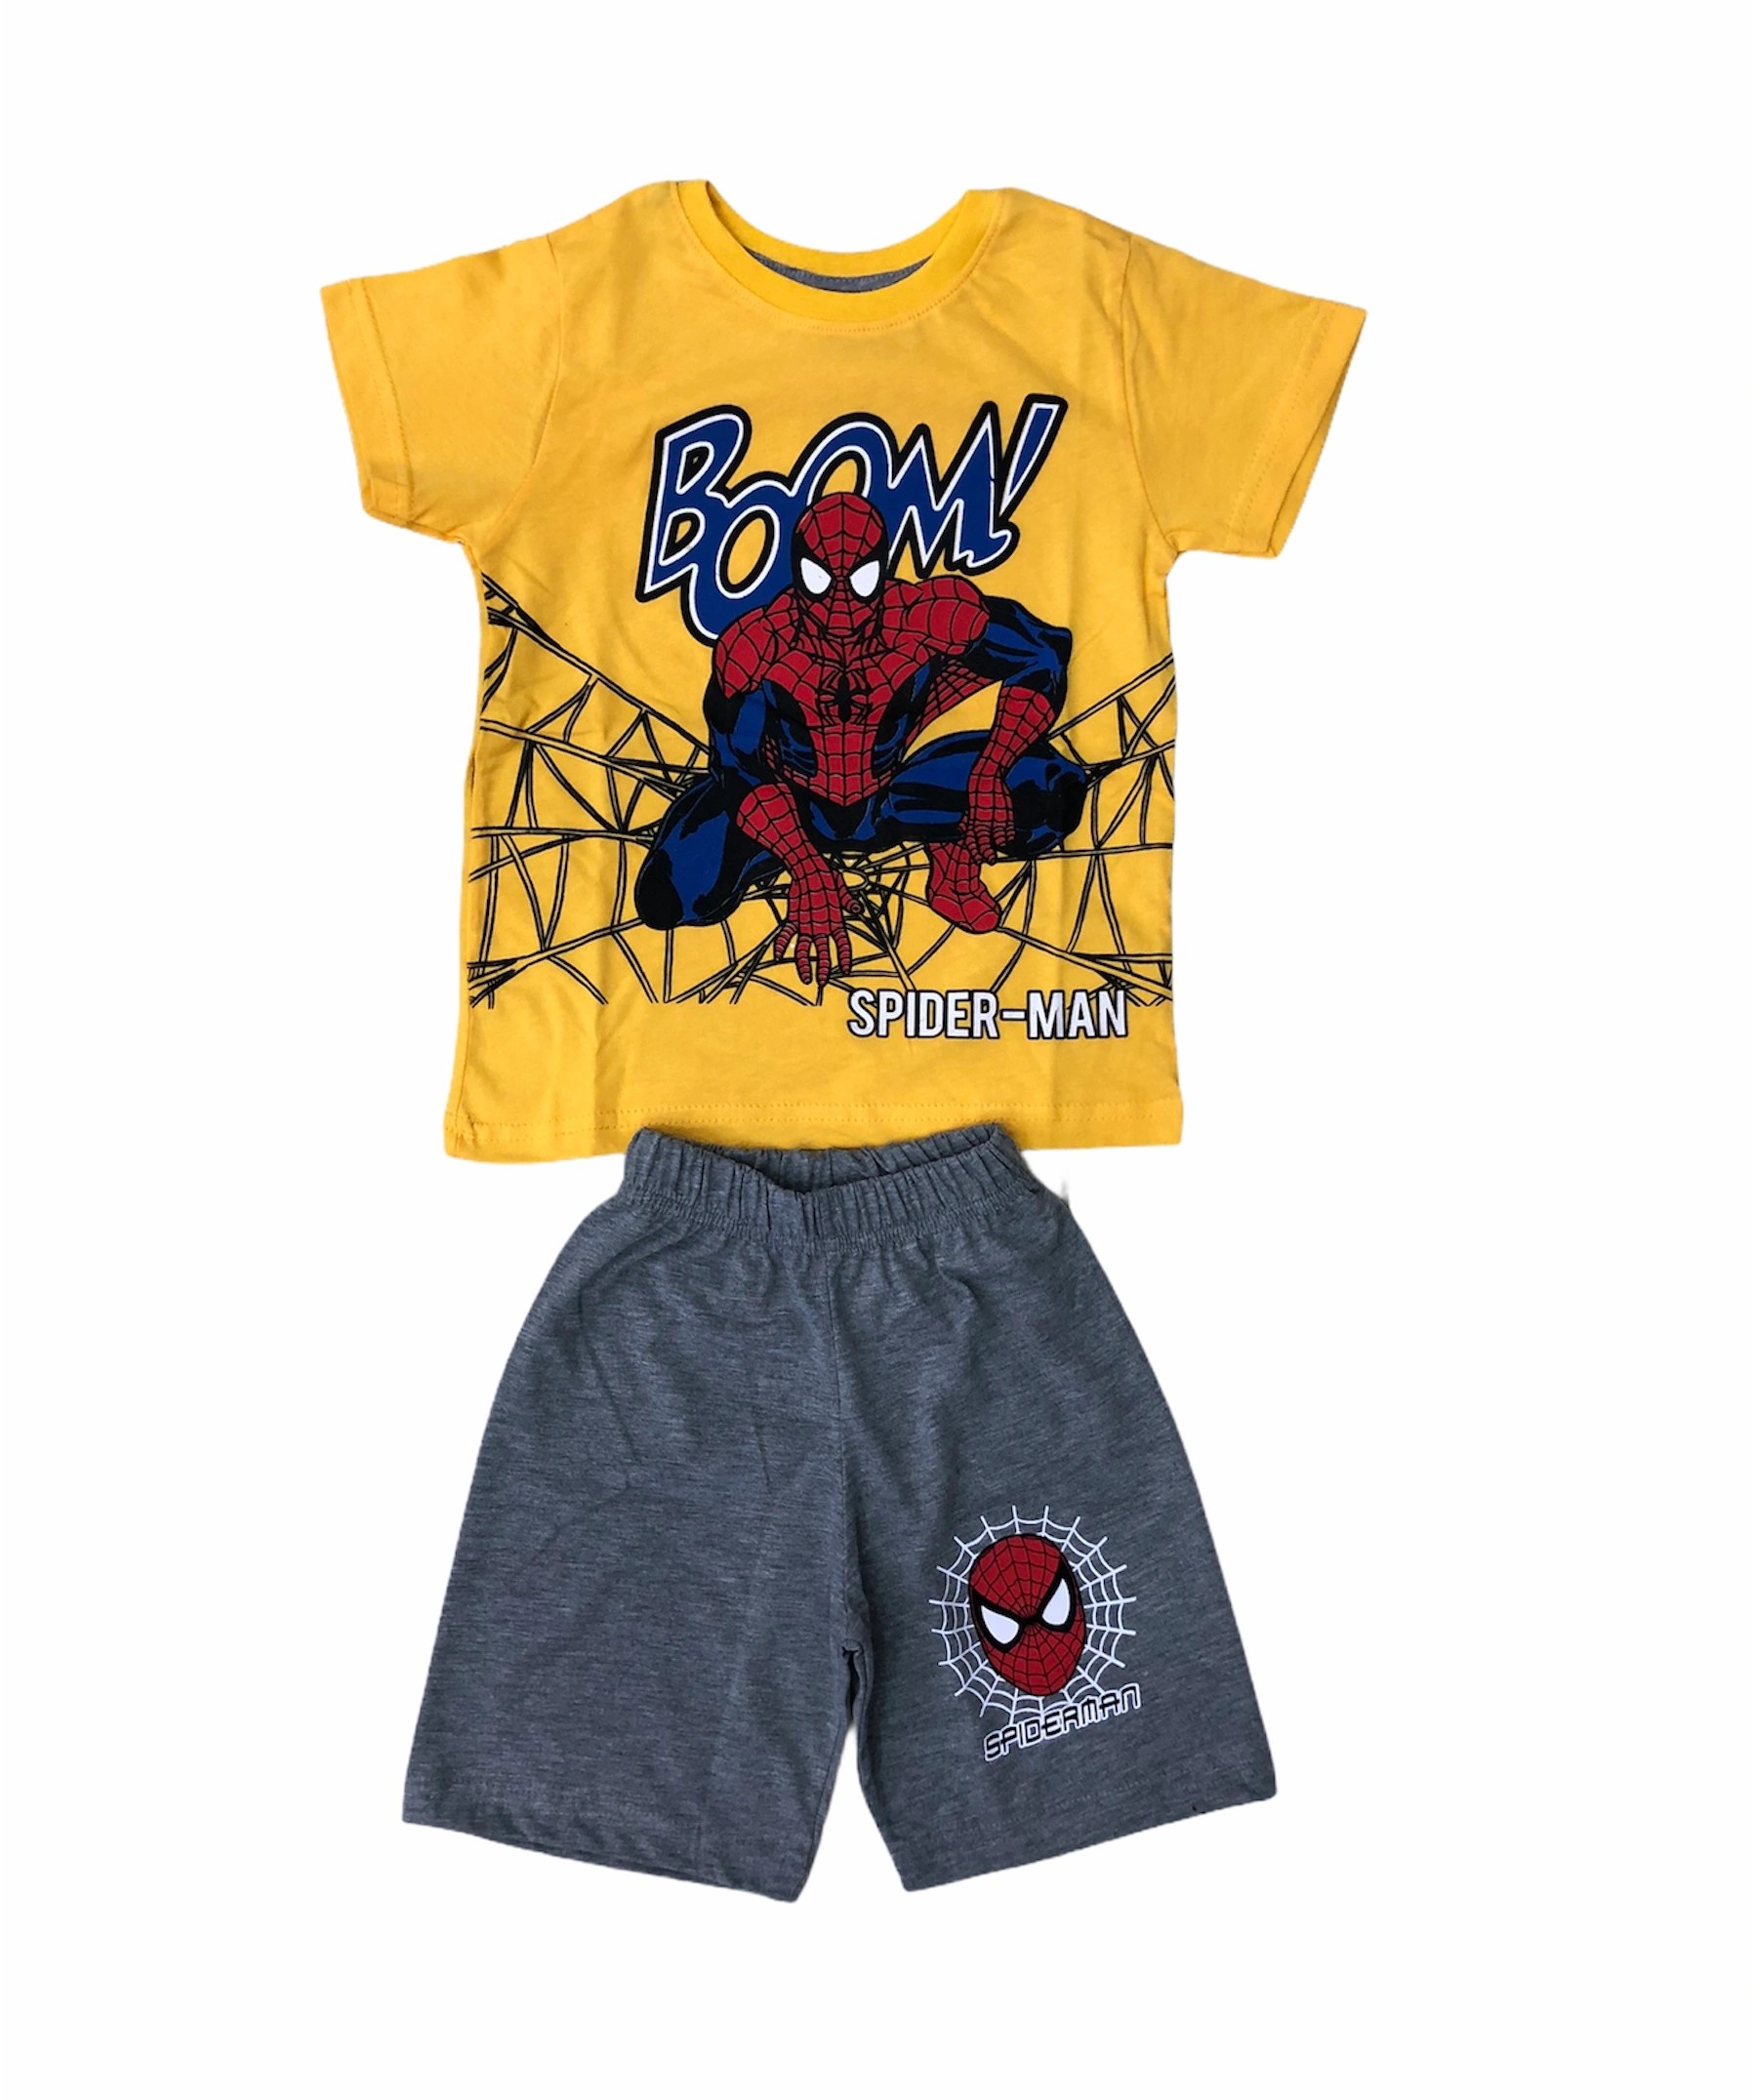 Soie Cotton Erkek Çocuk Spiderman Baskılı Şortlu Penye Takım  - Karışık - 100009933